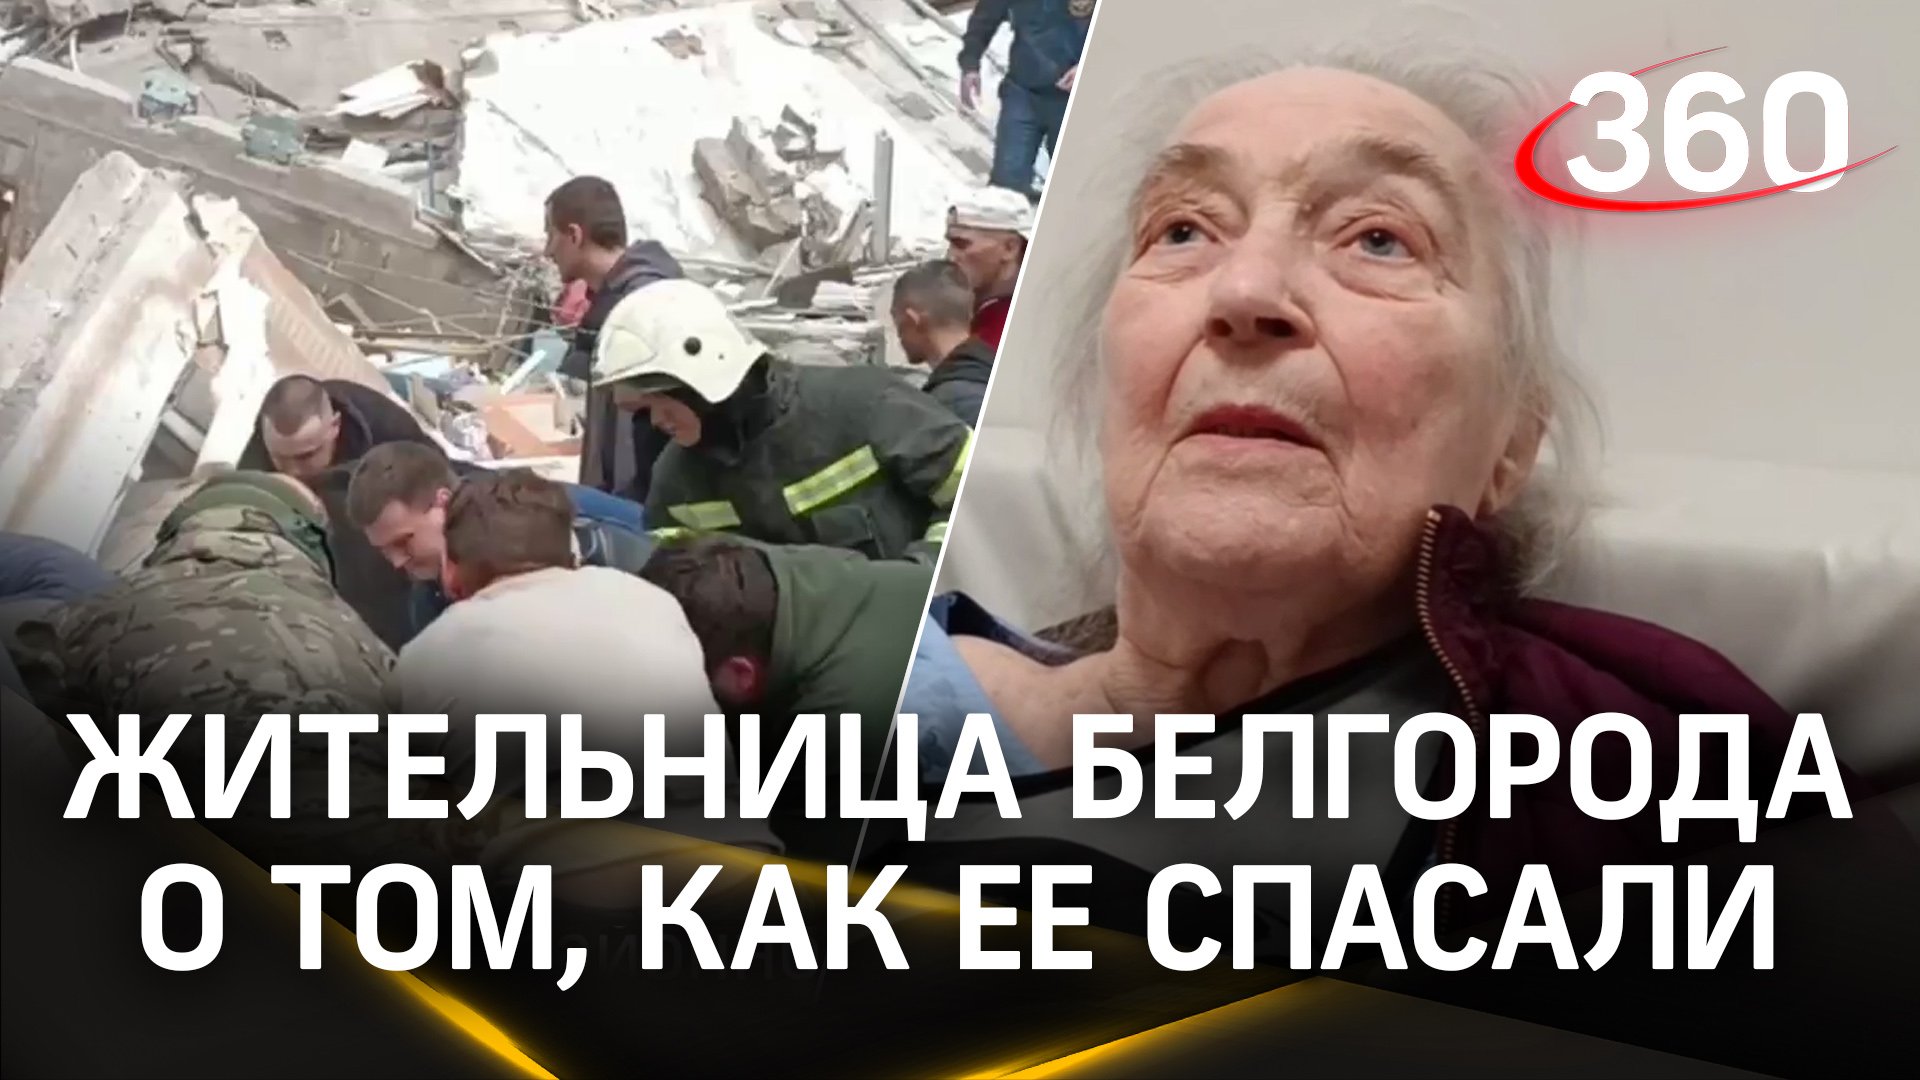 Спасенная из-под завалов жительница Белгорода рассказала, как ее спасали из обрушившегося подъезда